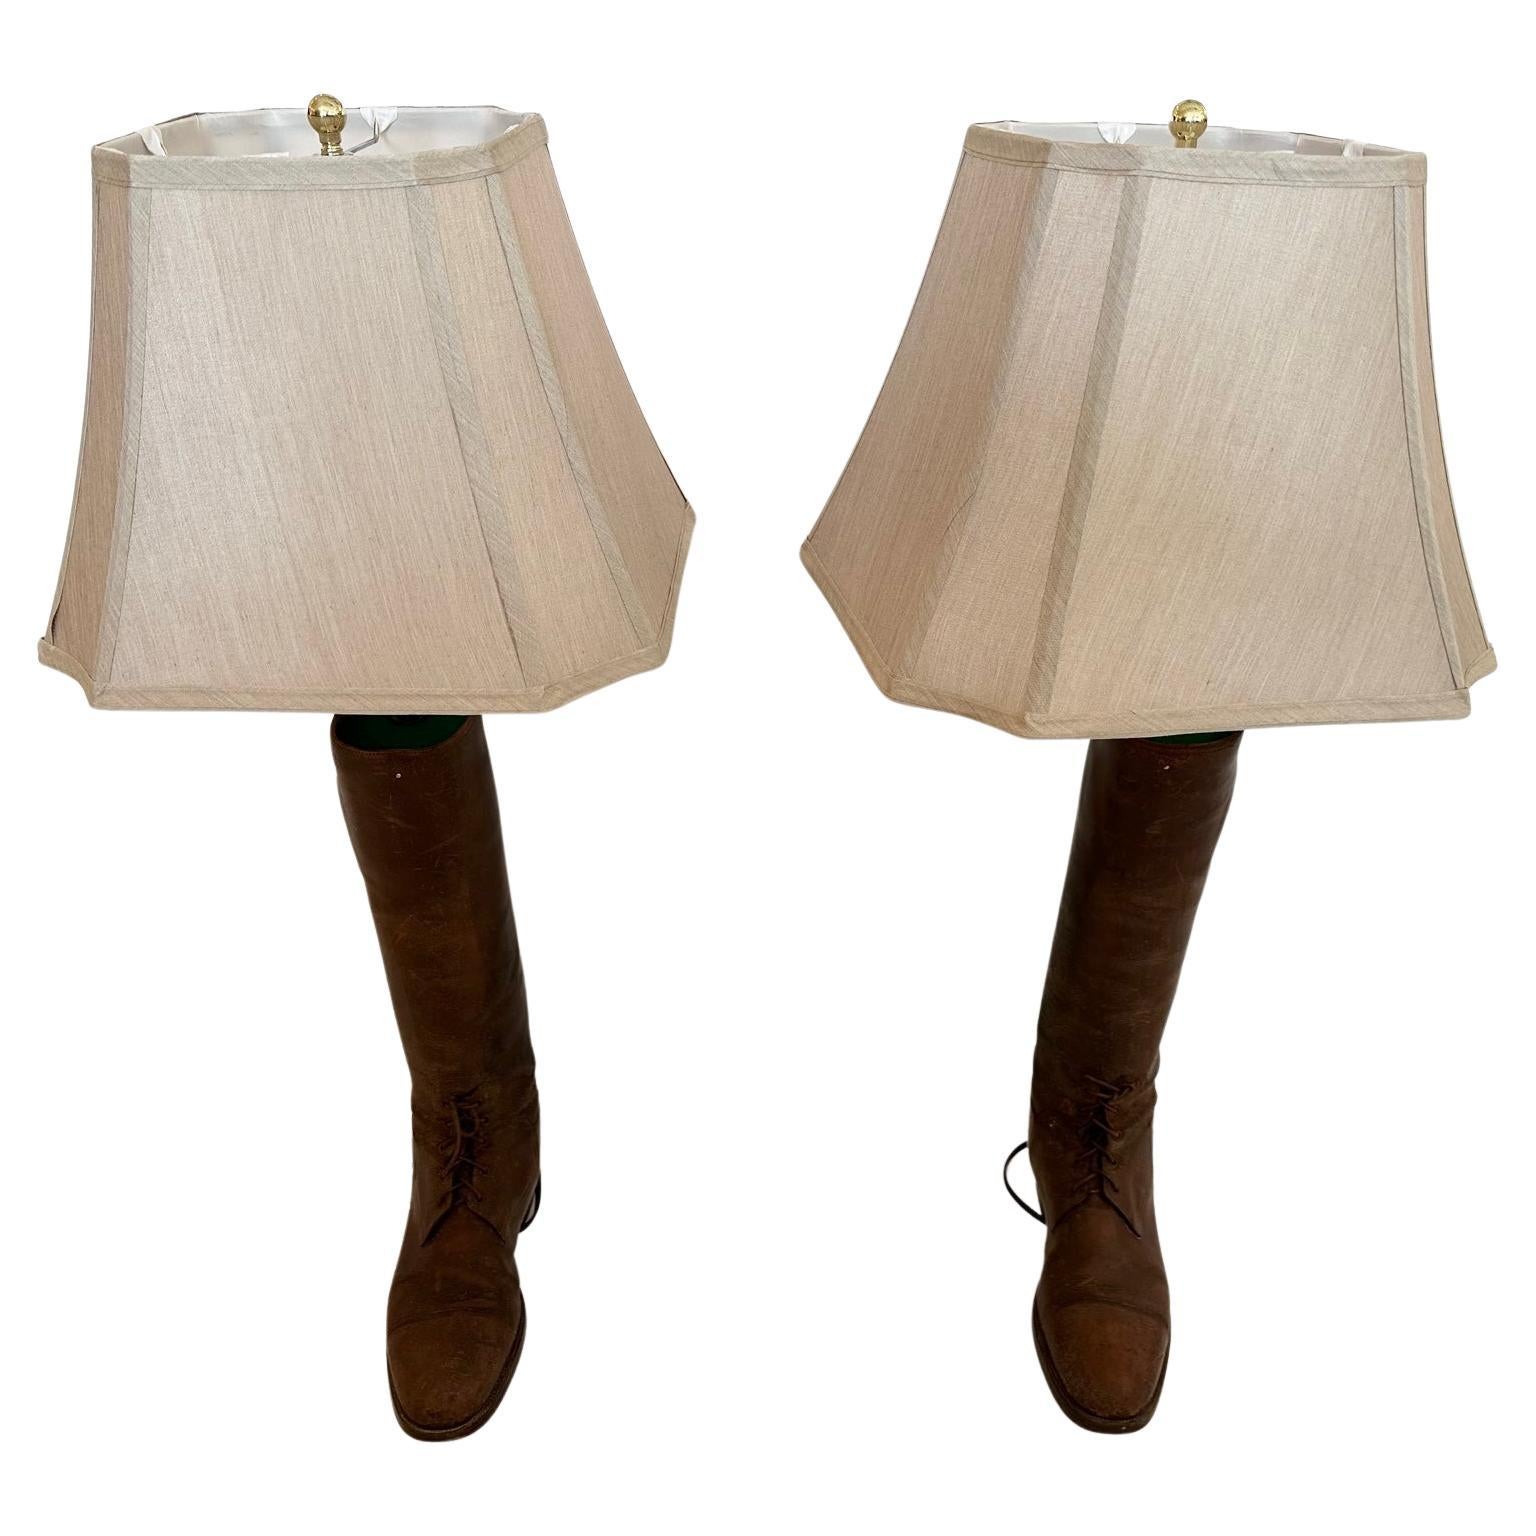 Ungewöhnliche und charaktervolle Tischlampen, die aus alten englischen Lederreitstiefeln gefertigt wurden.